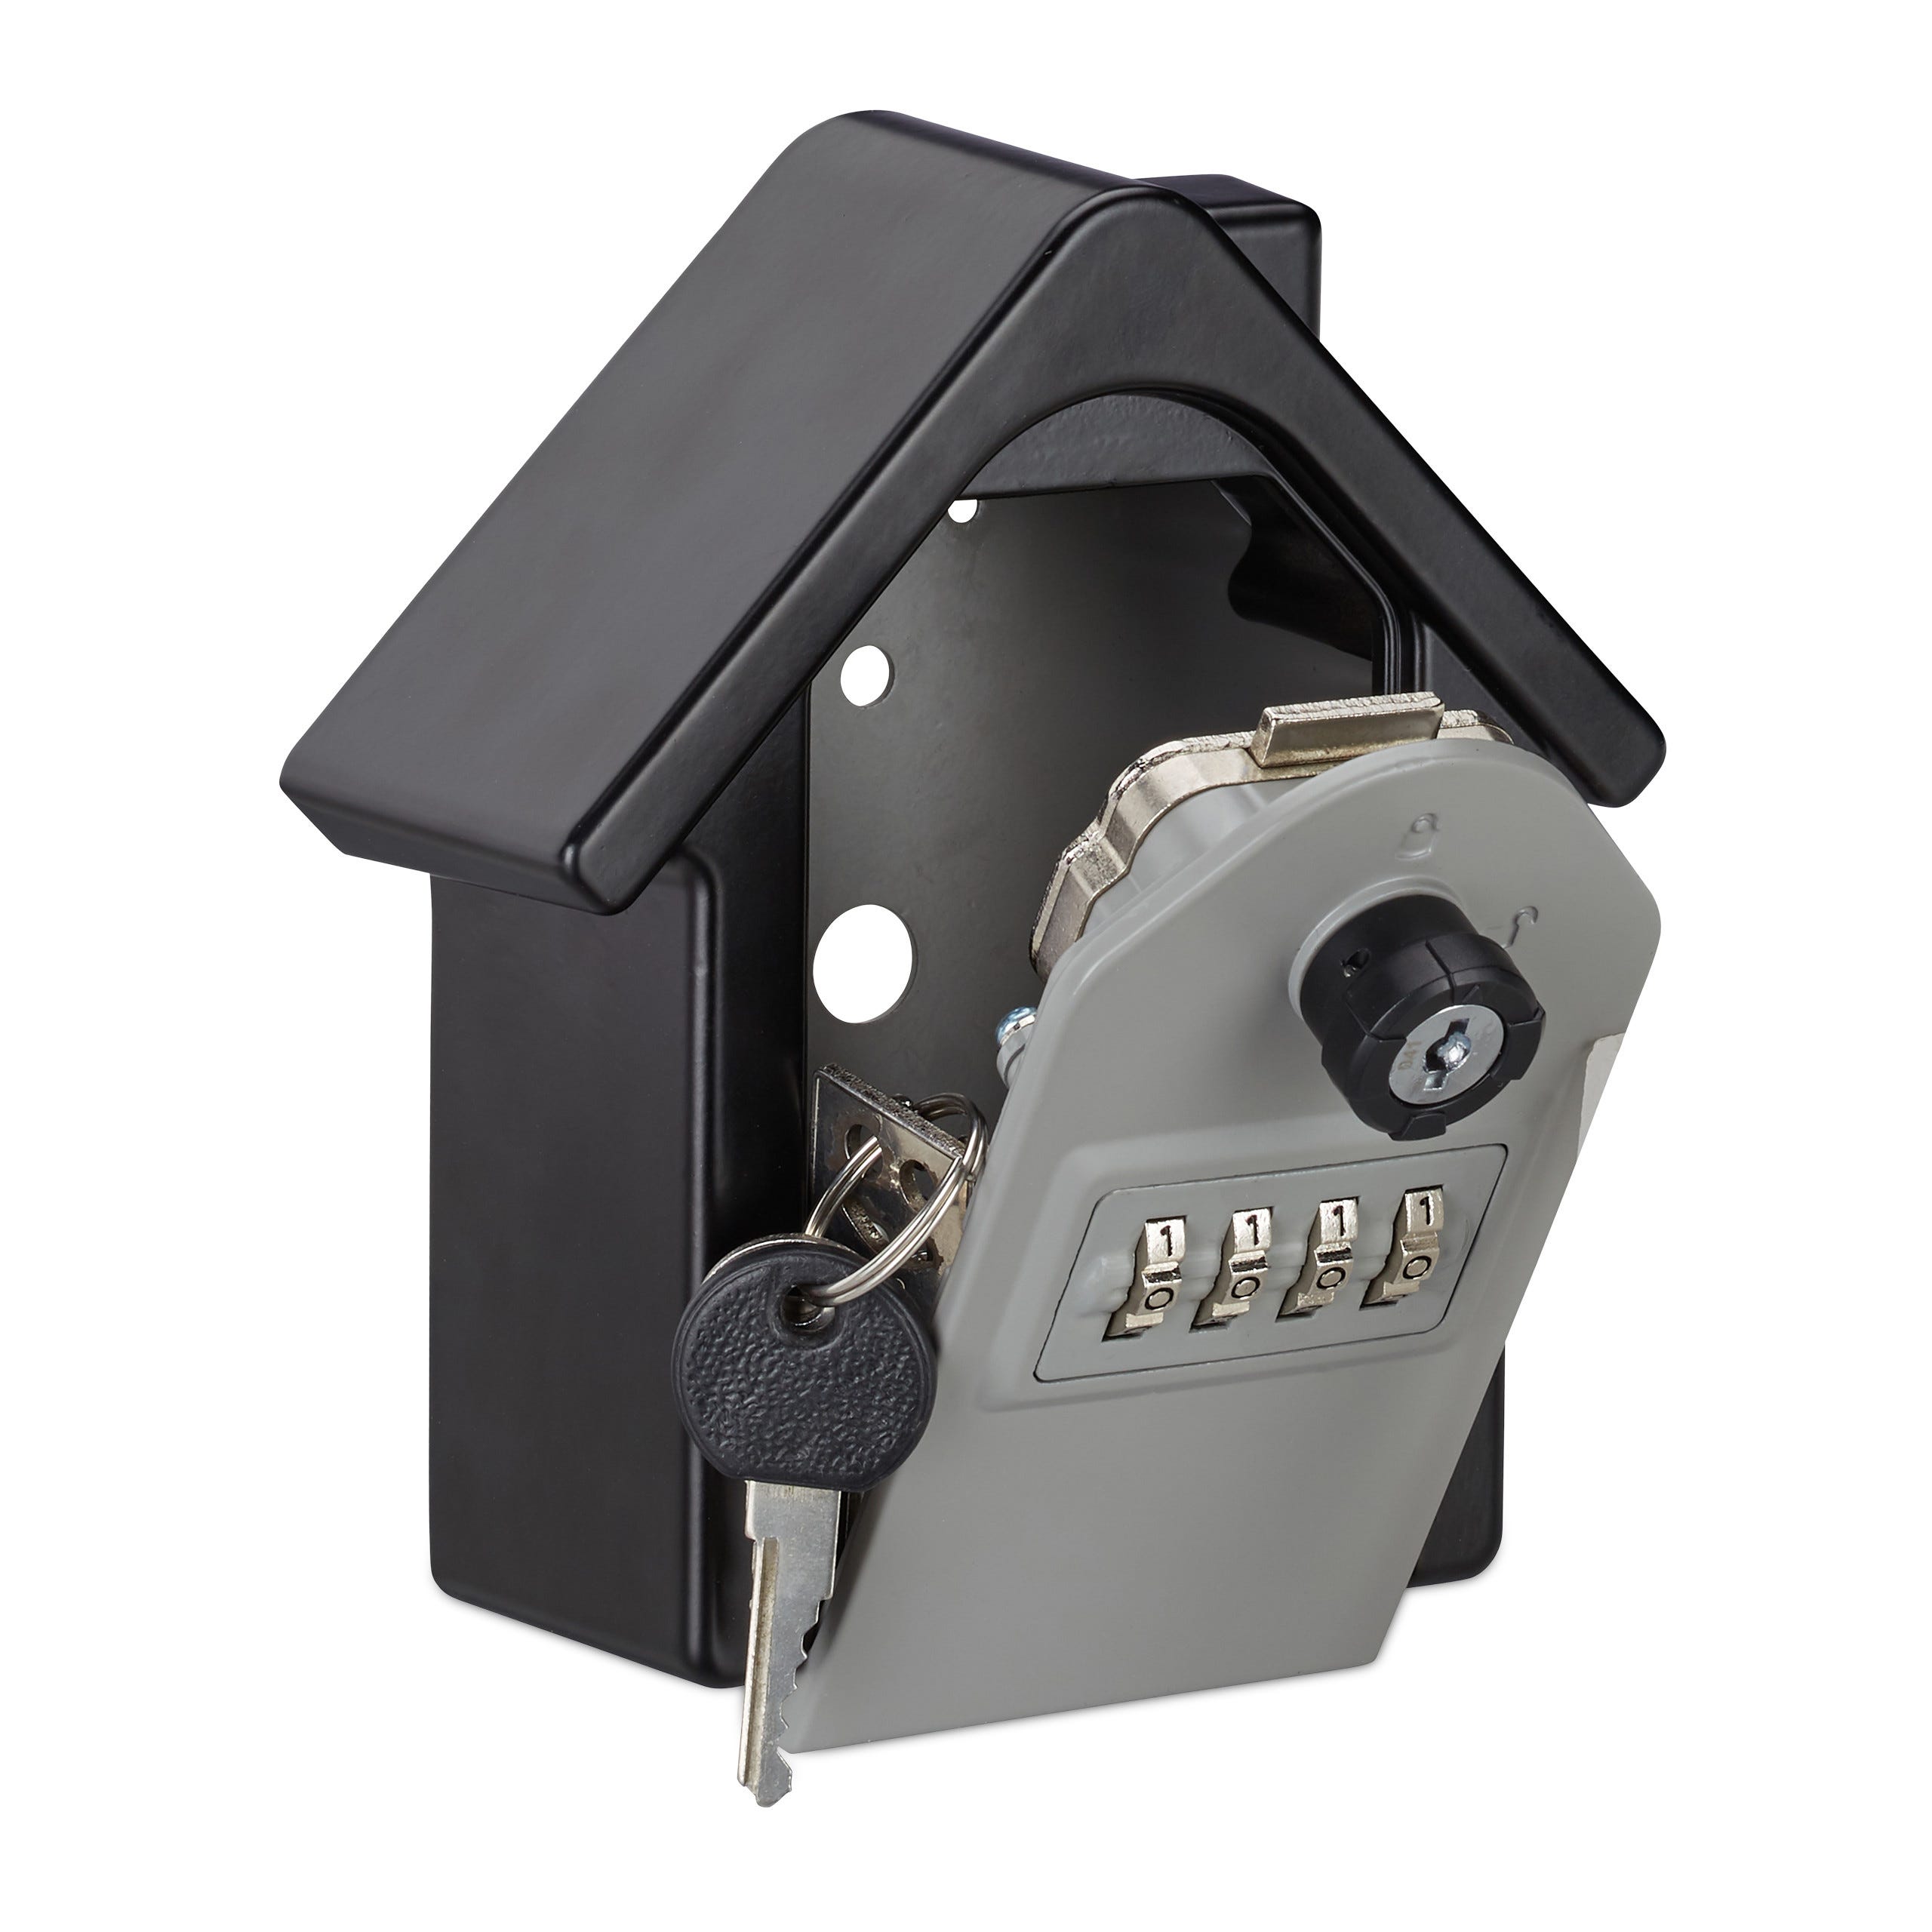 Cassetta per chiavi a forma di casa con combinazione a 4 cifre, 2 chiavi di  riserva, nero satinato